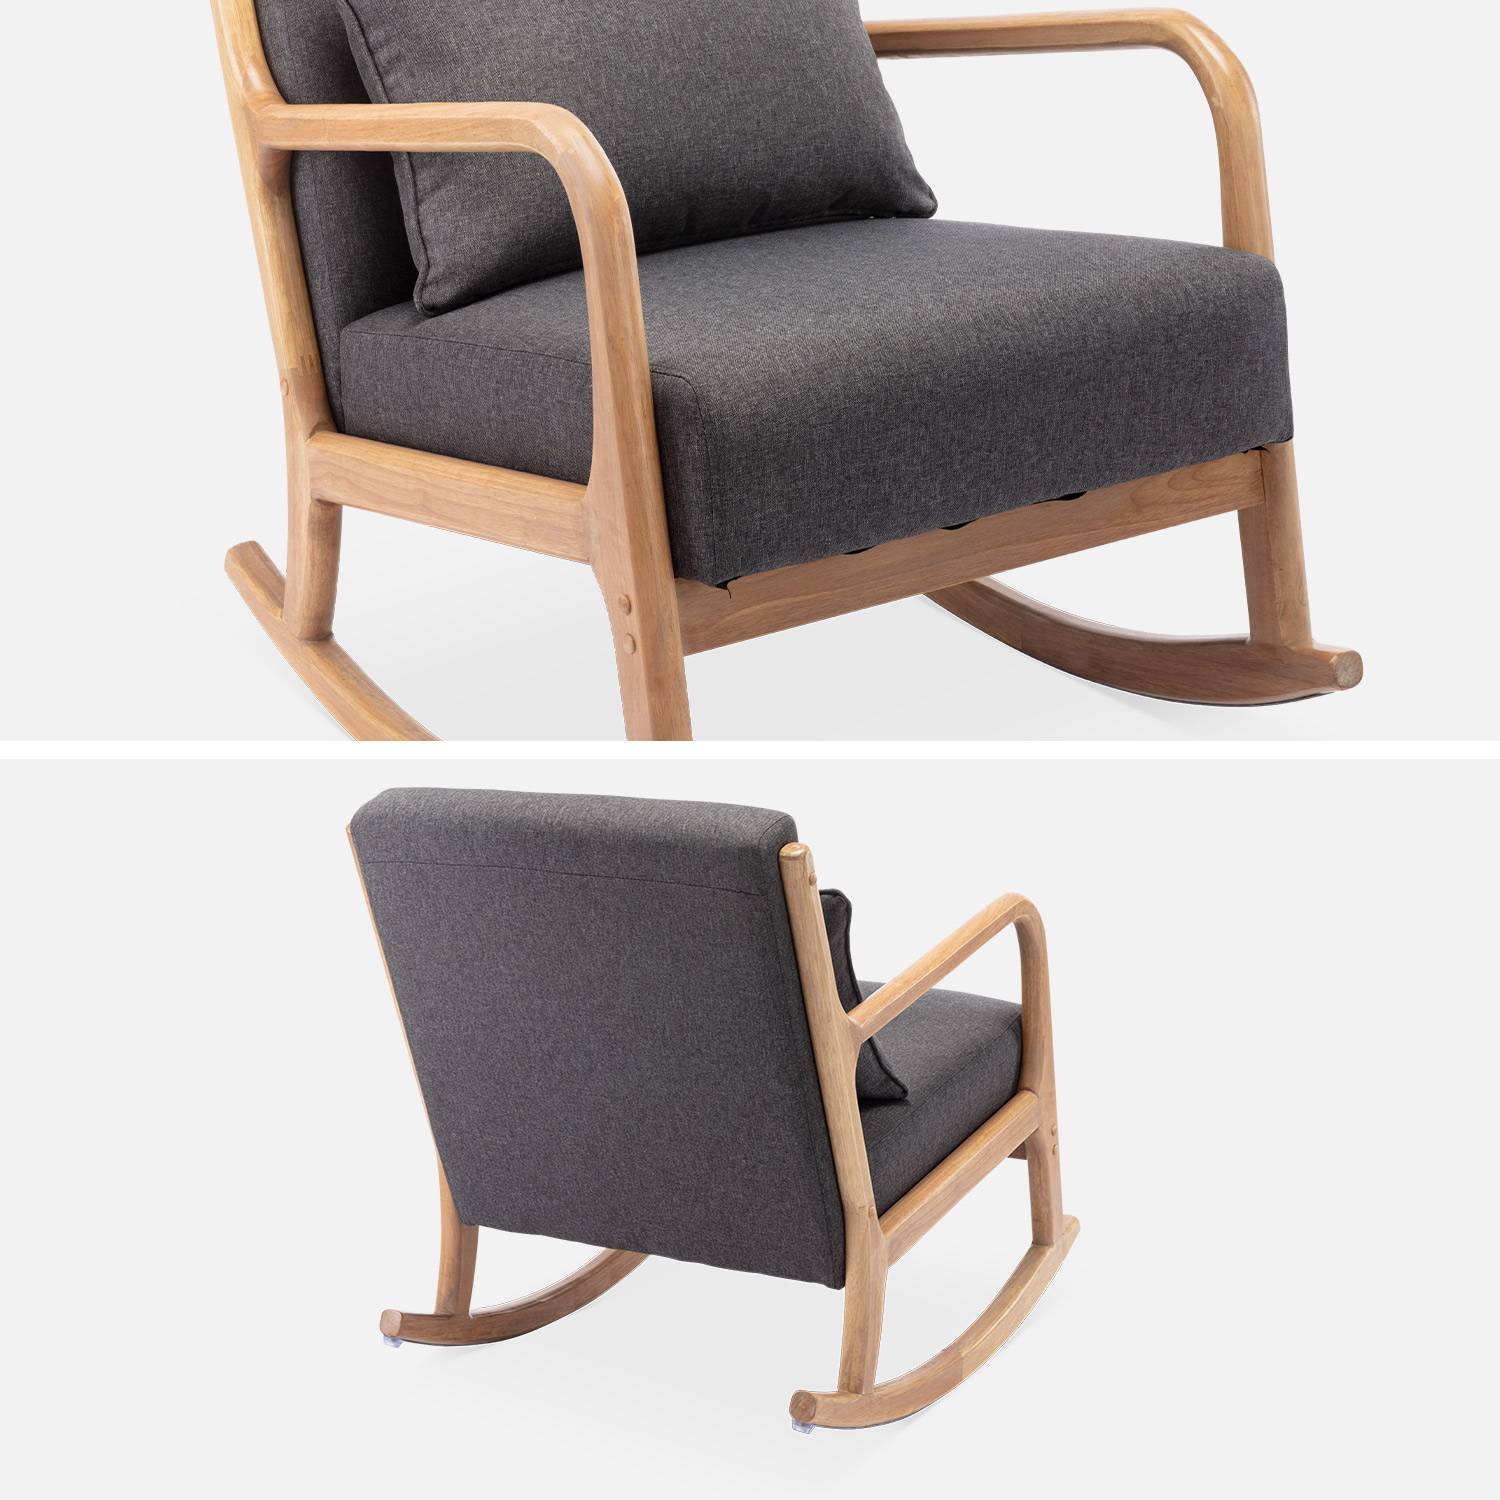 Fauteuil à bascule design en bois et tissu, 1 place, rocking chair scandinave  Photo7